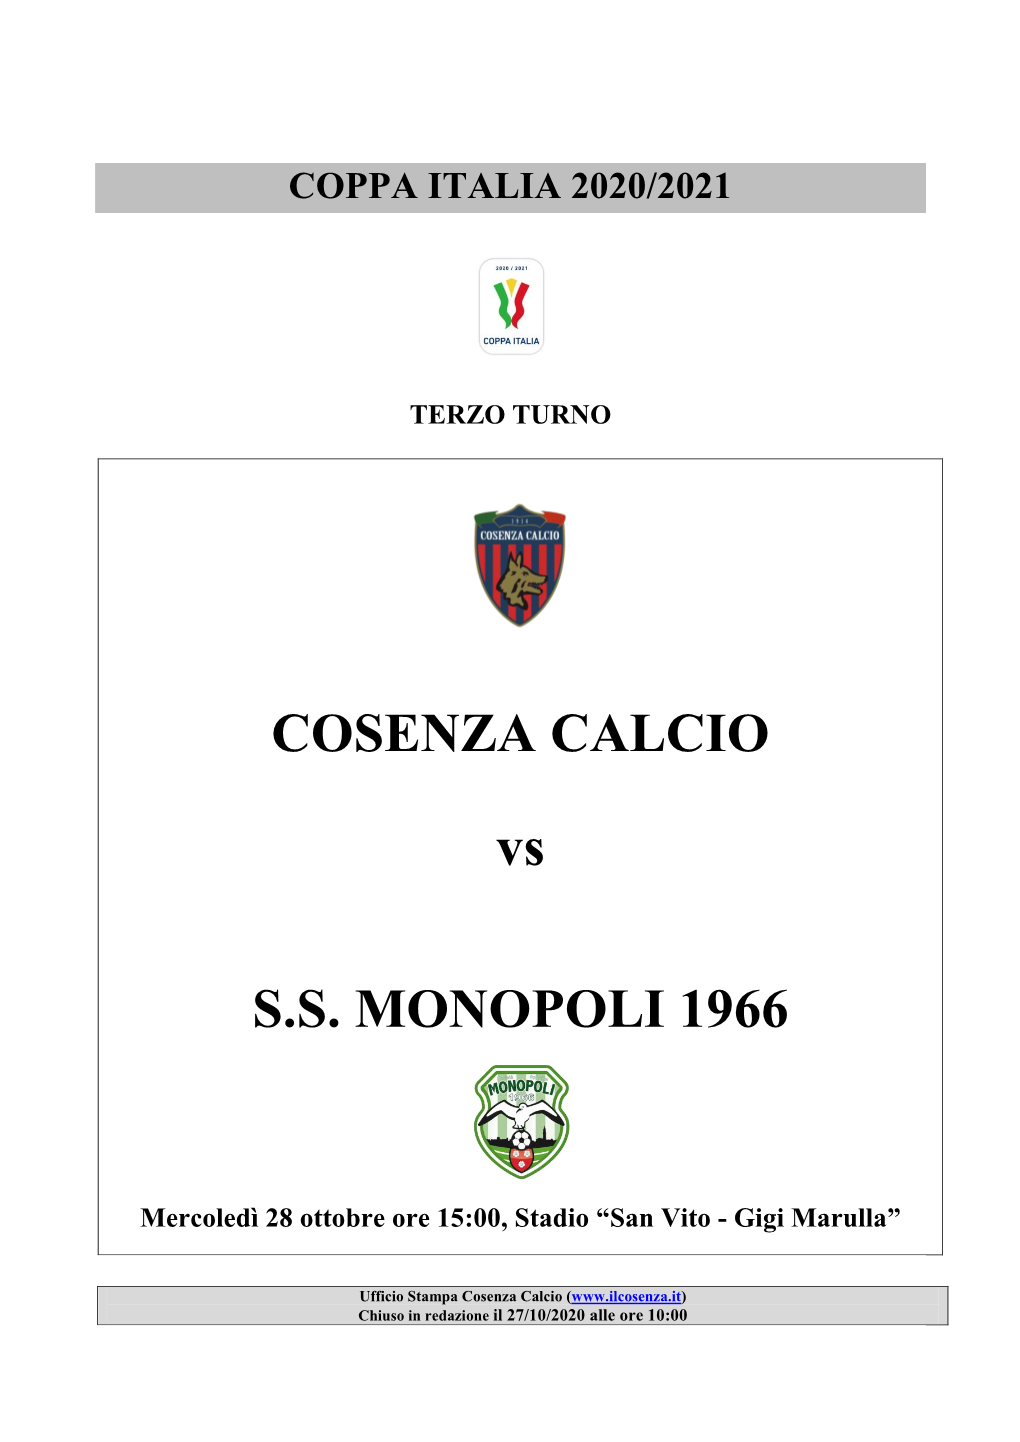 COSENZA CALCIO Vs S.S. MONOPOLI 1966